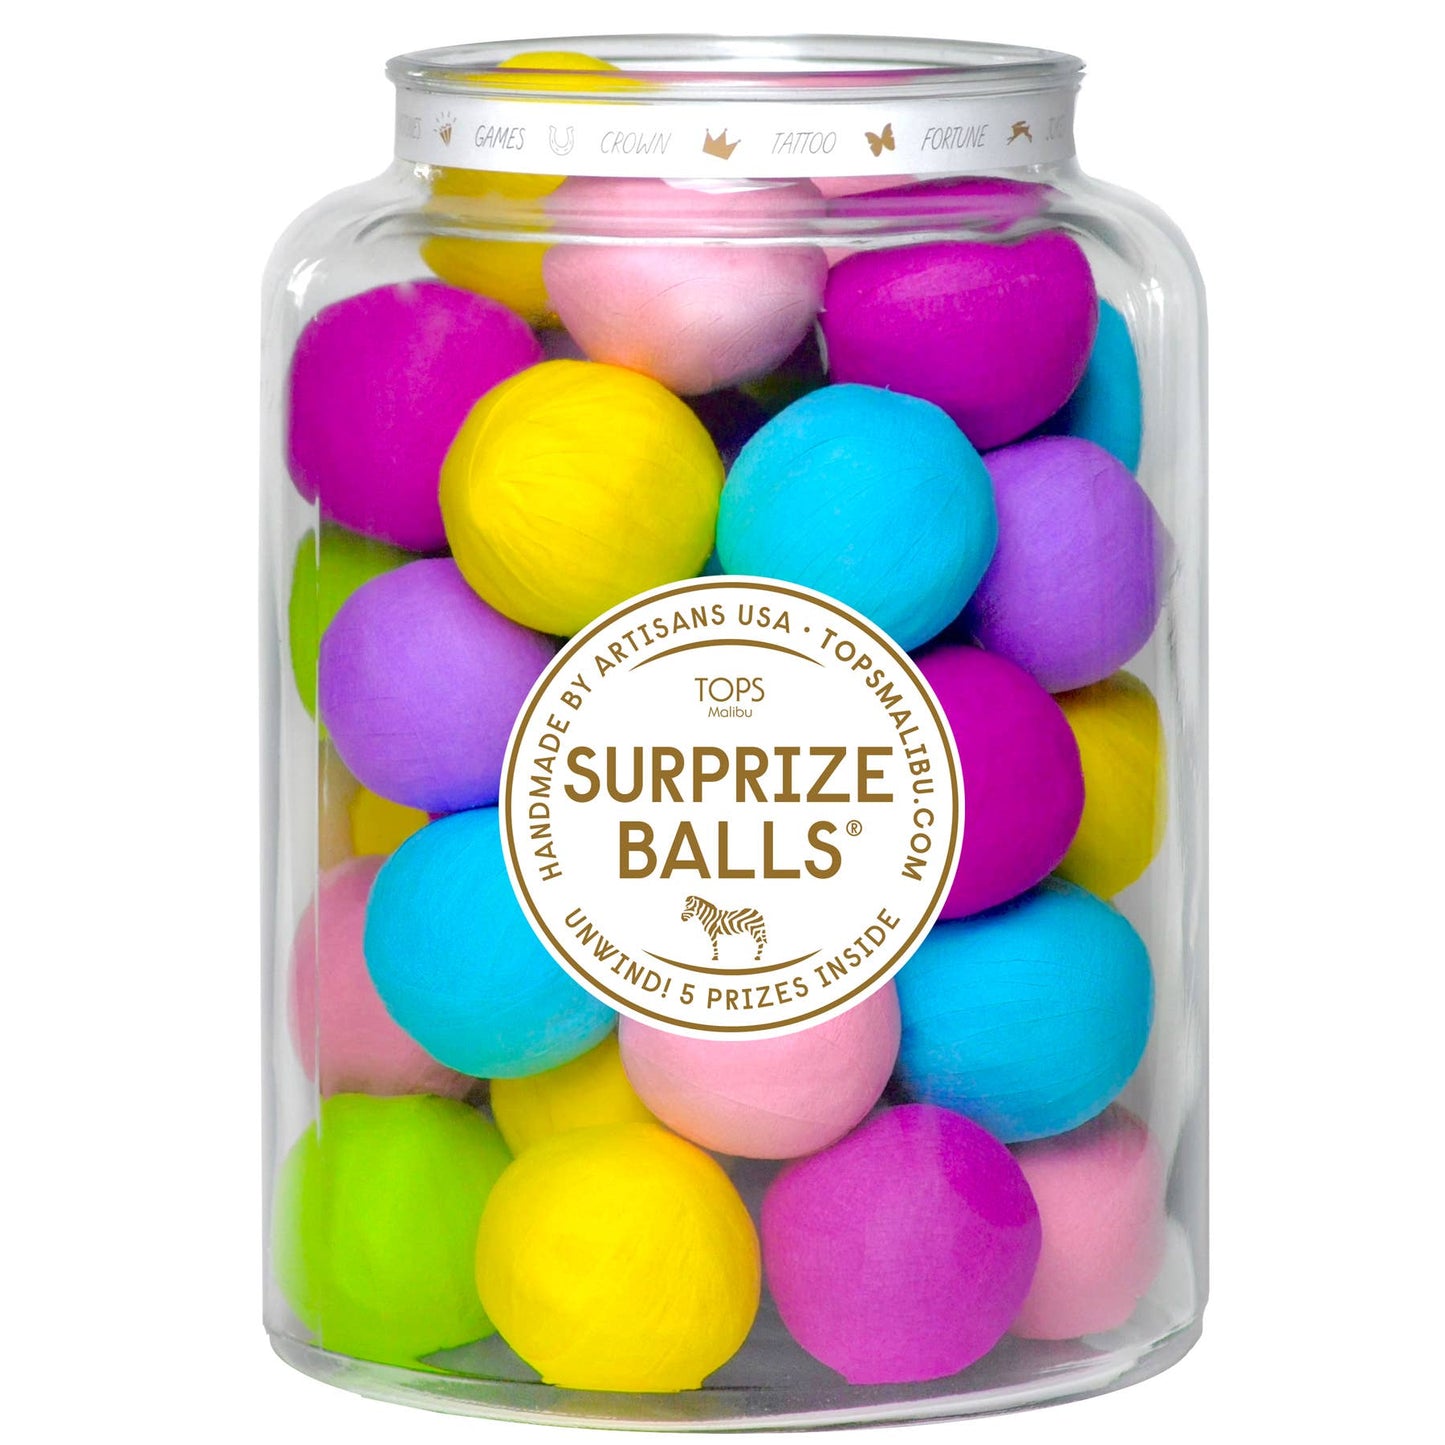 Surprize Balls!